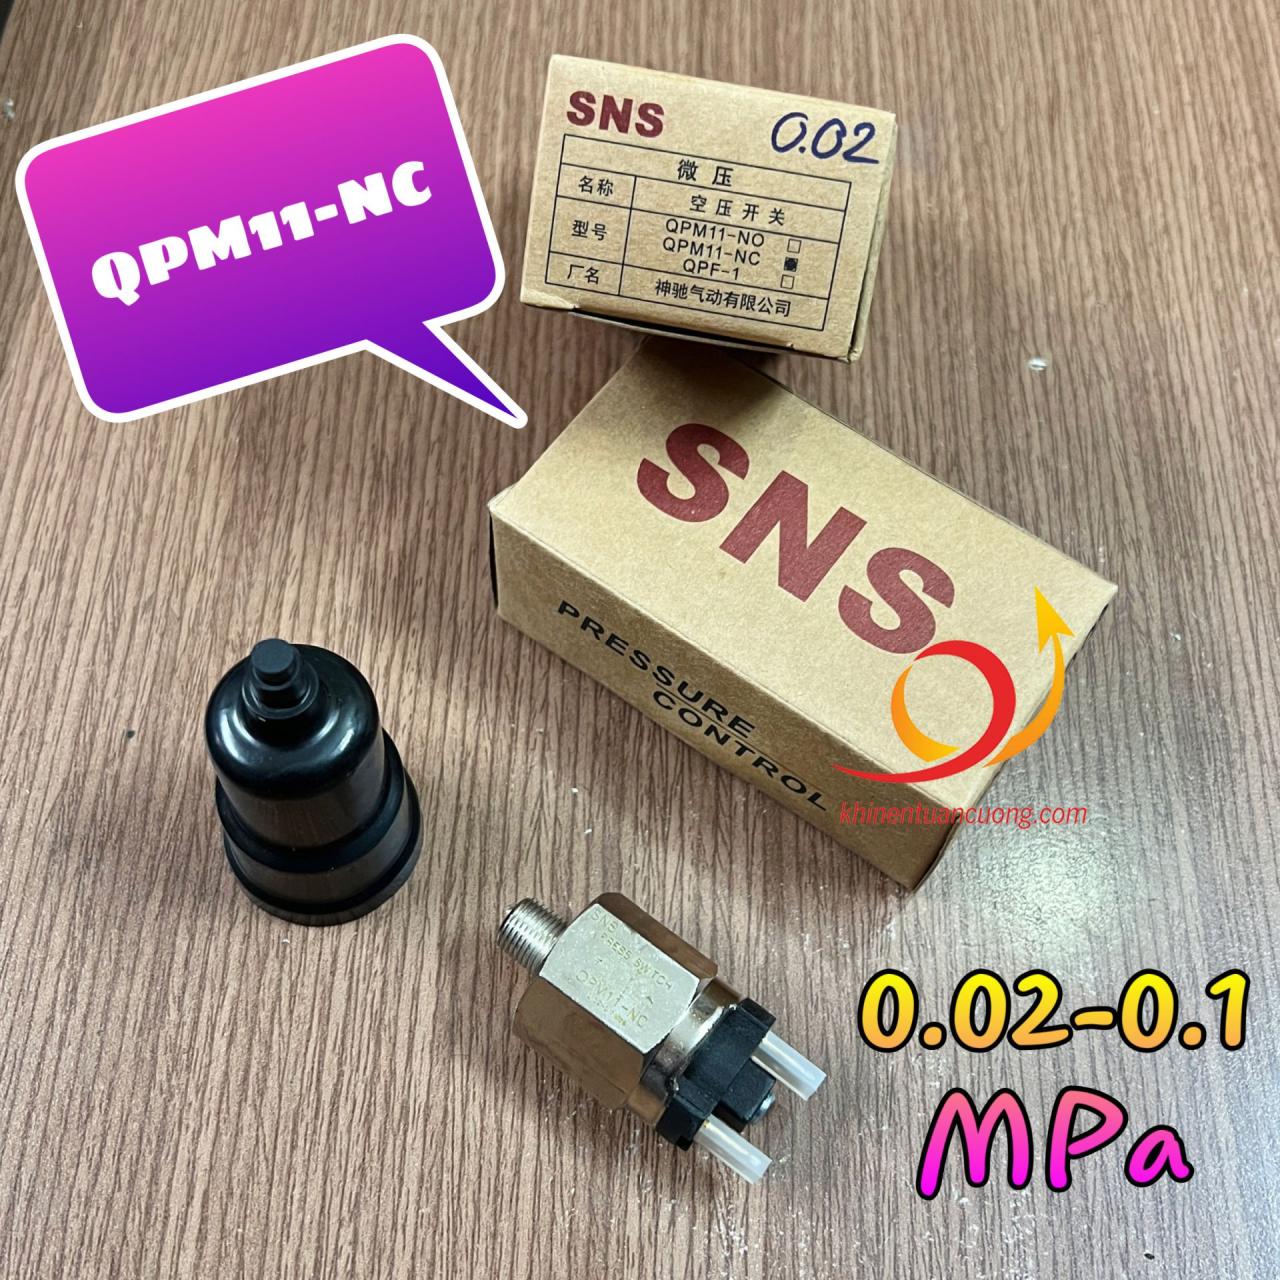 QPM11-NC là dạng rơ le áp suất Thường Đóng - Normally Closed đến từ thương hiệu SNS nội địa Trung Quốc. Và khác với phiên bản trước đã từng giới thiệu trên website khinentuancuong, lần này chúng tôi sẽ mang đến loại áp thấp với dải điều chỉnh chỉ từ 0.02 tới 0.1 MPa